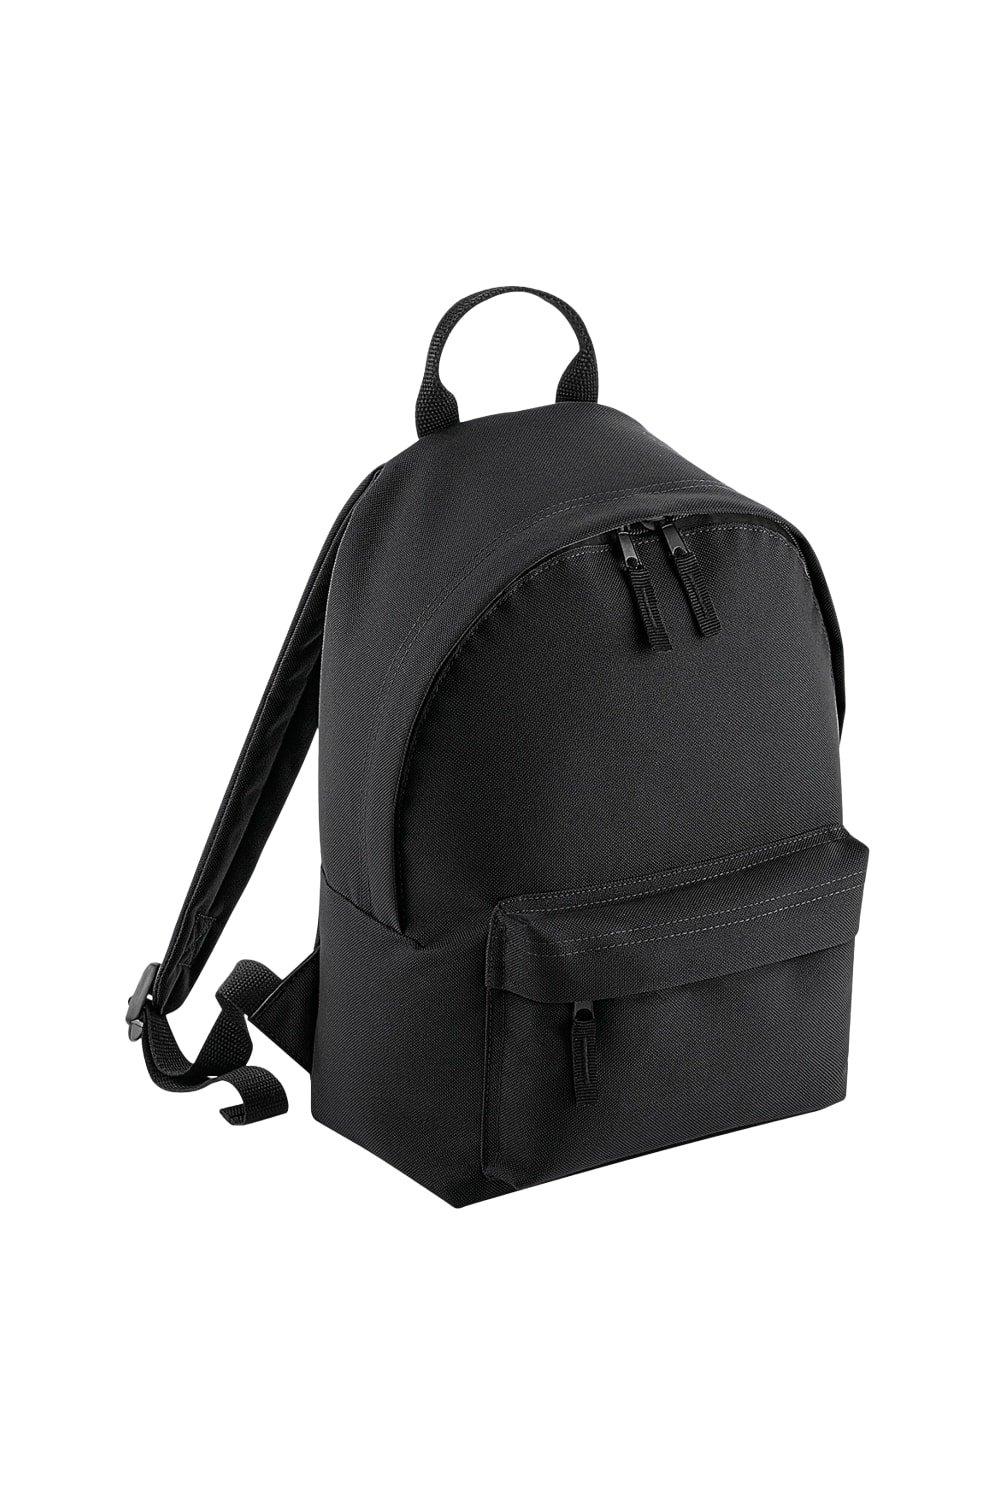 Модный мини-рюкзак Bagbase, черный